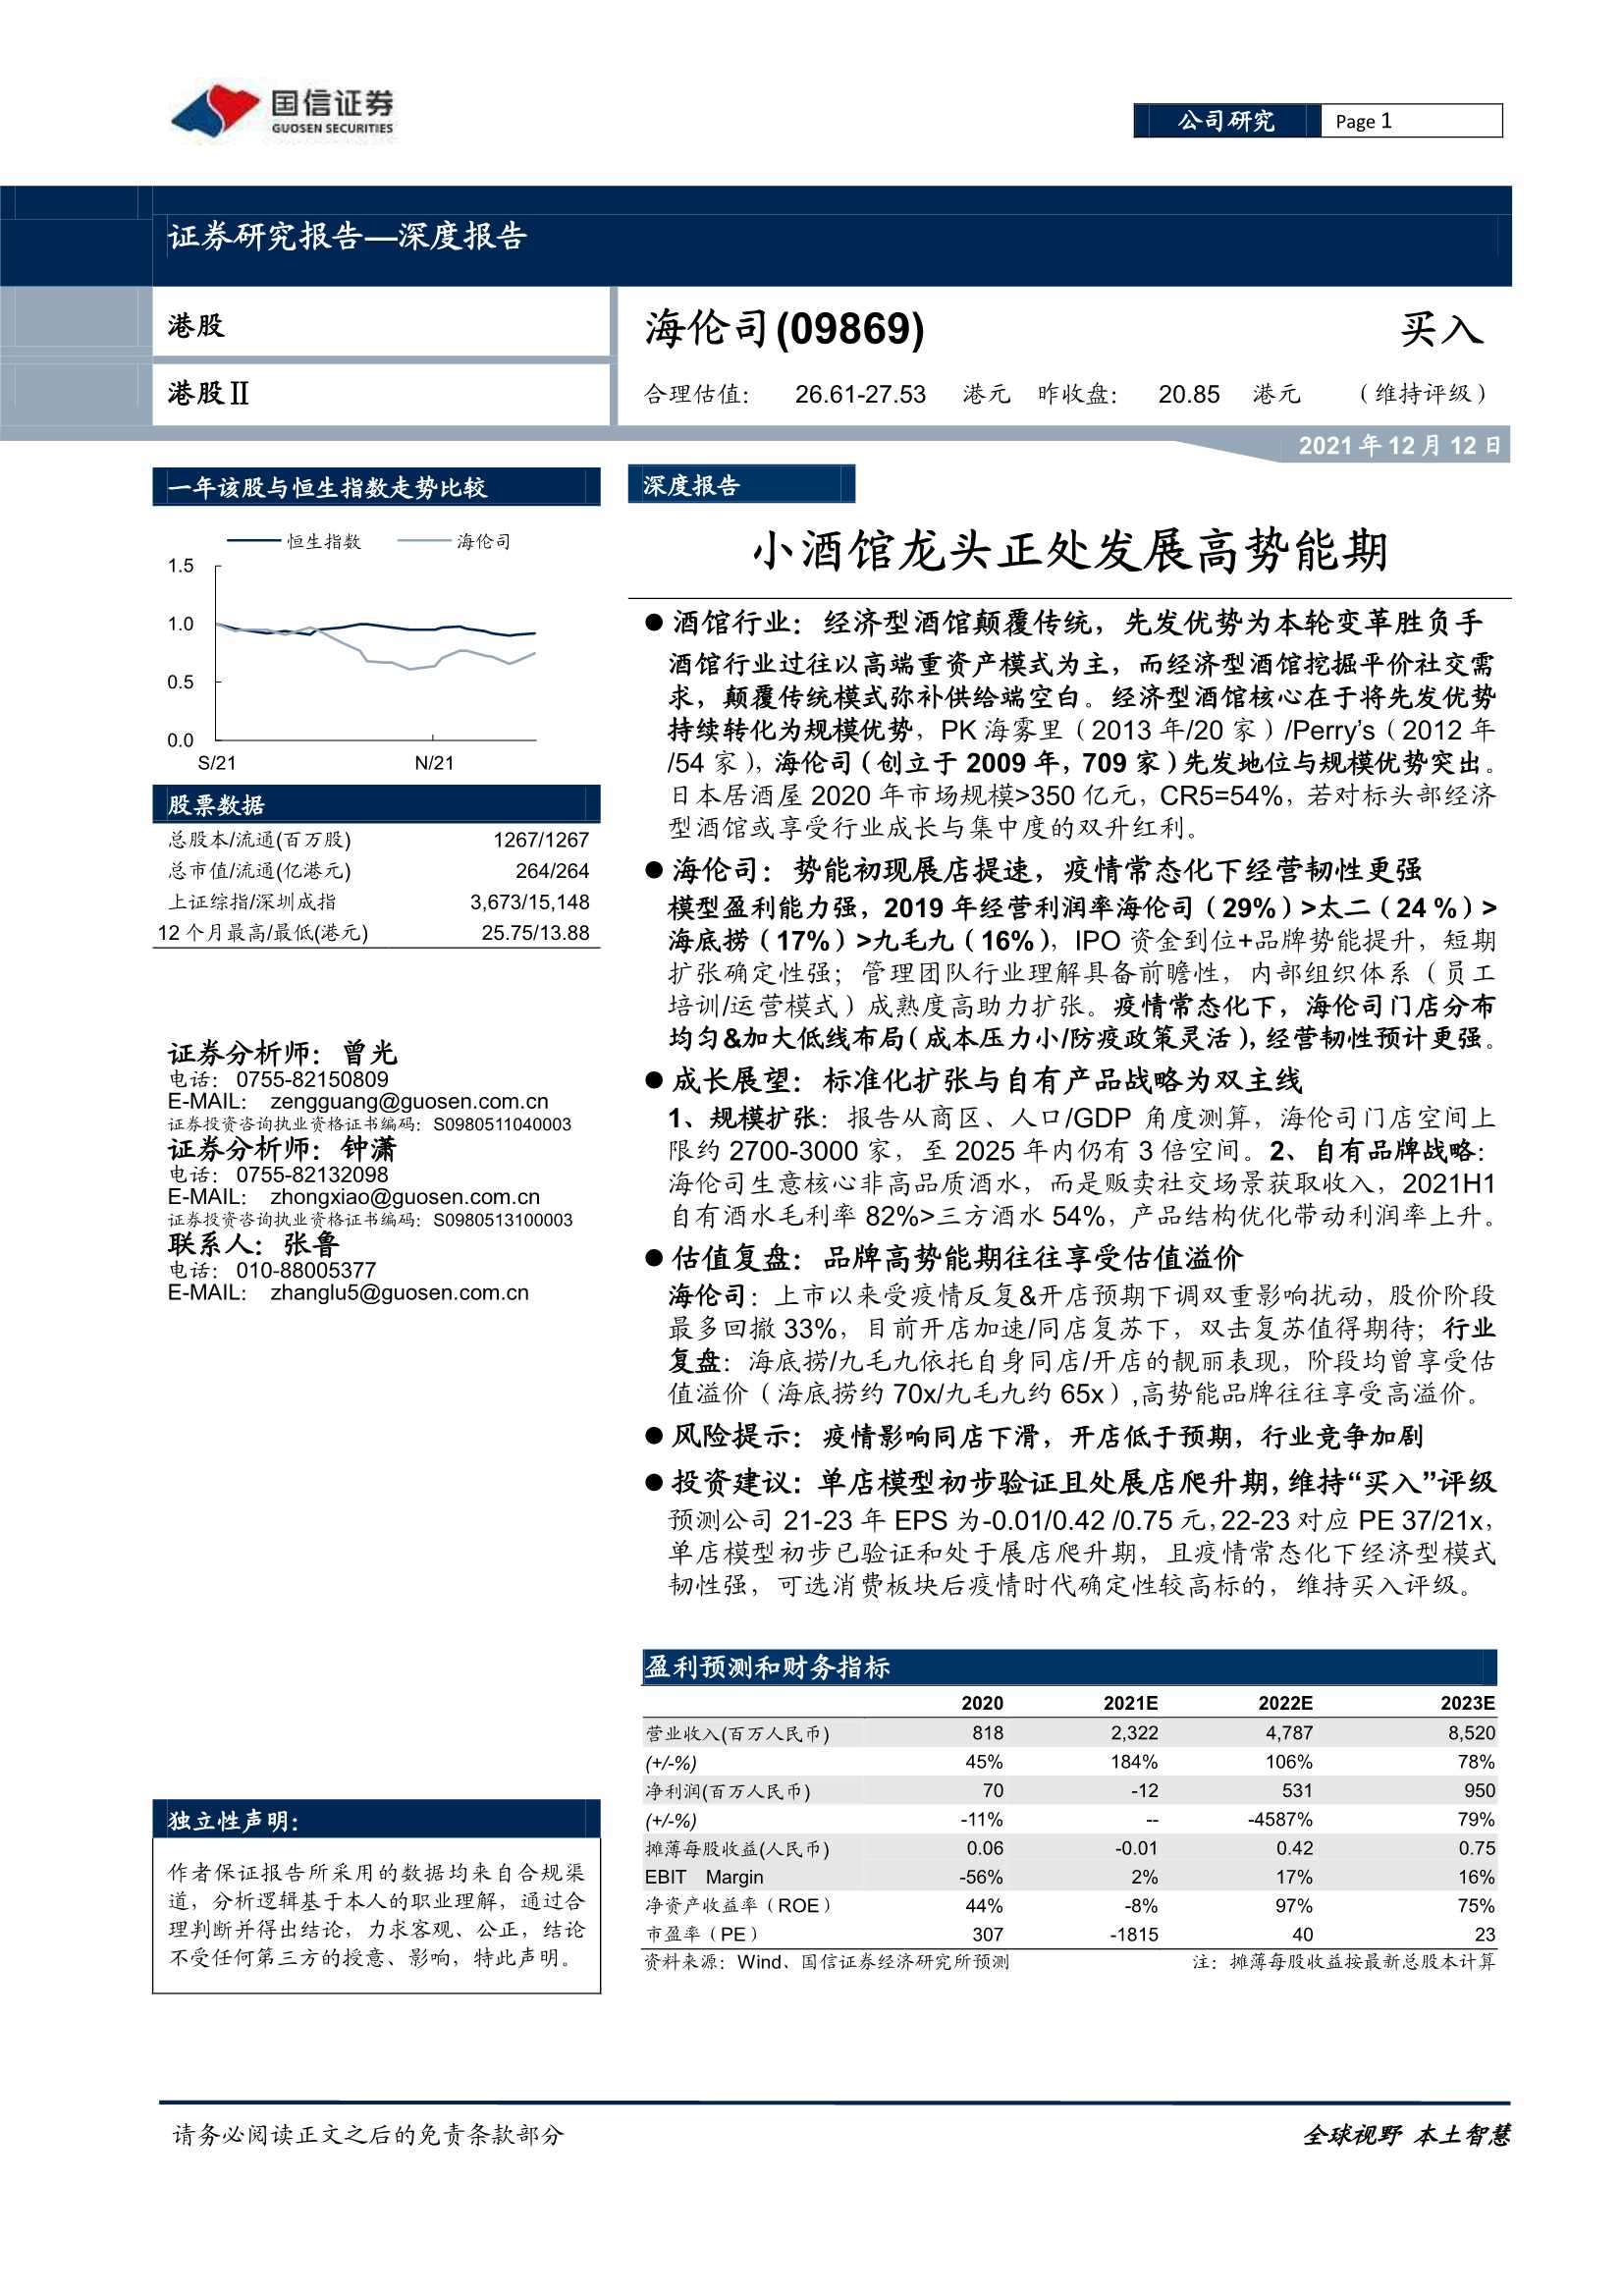 国信证券-海伦司-9869.HK-小酒馆龙头正处发展高势能期-20211212-34页